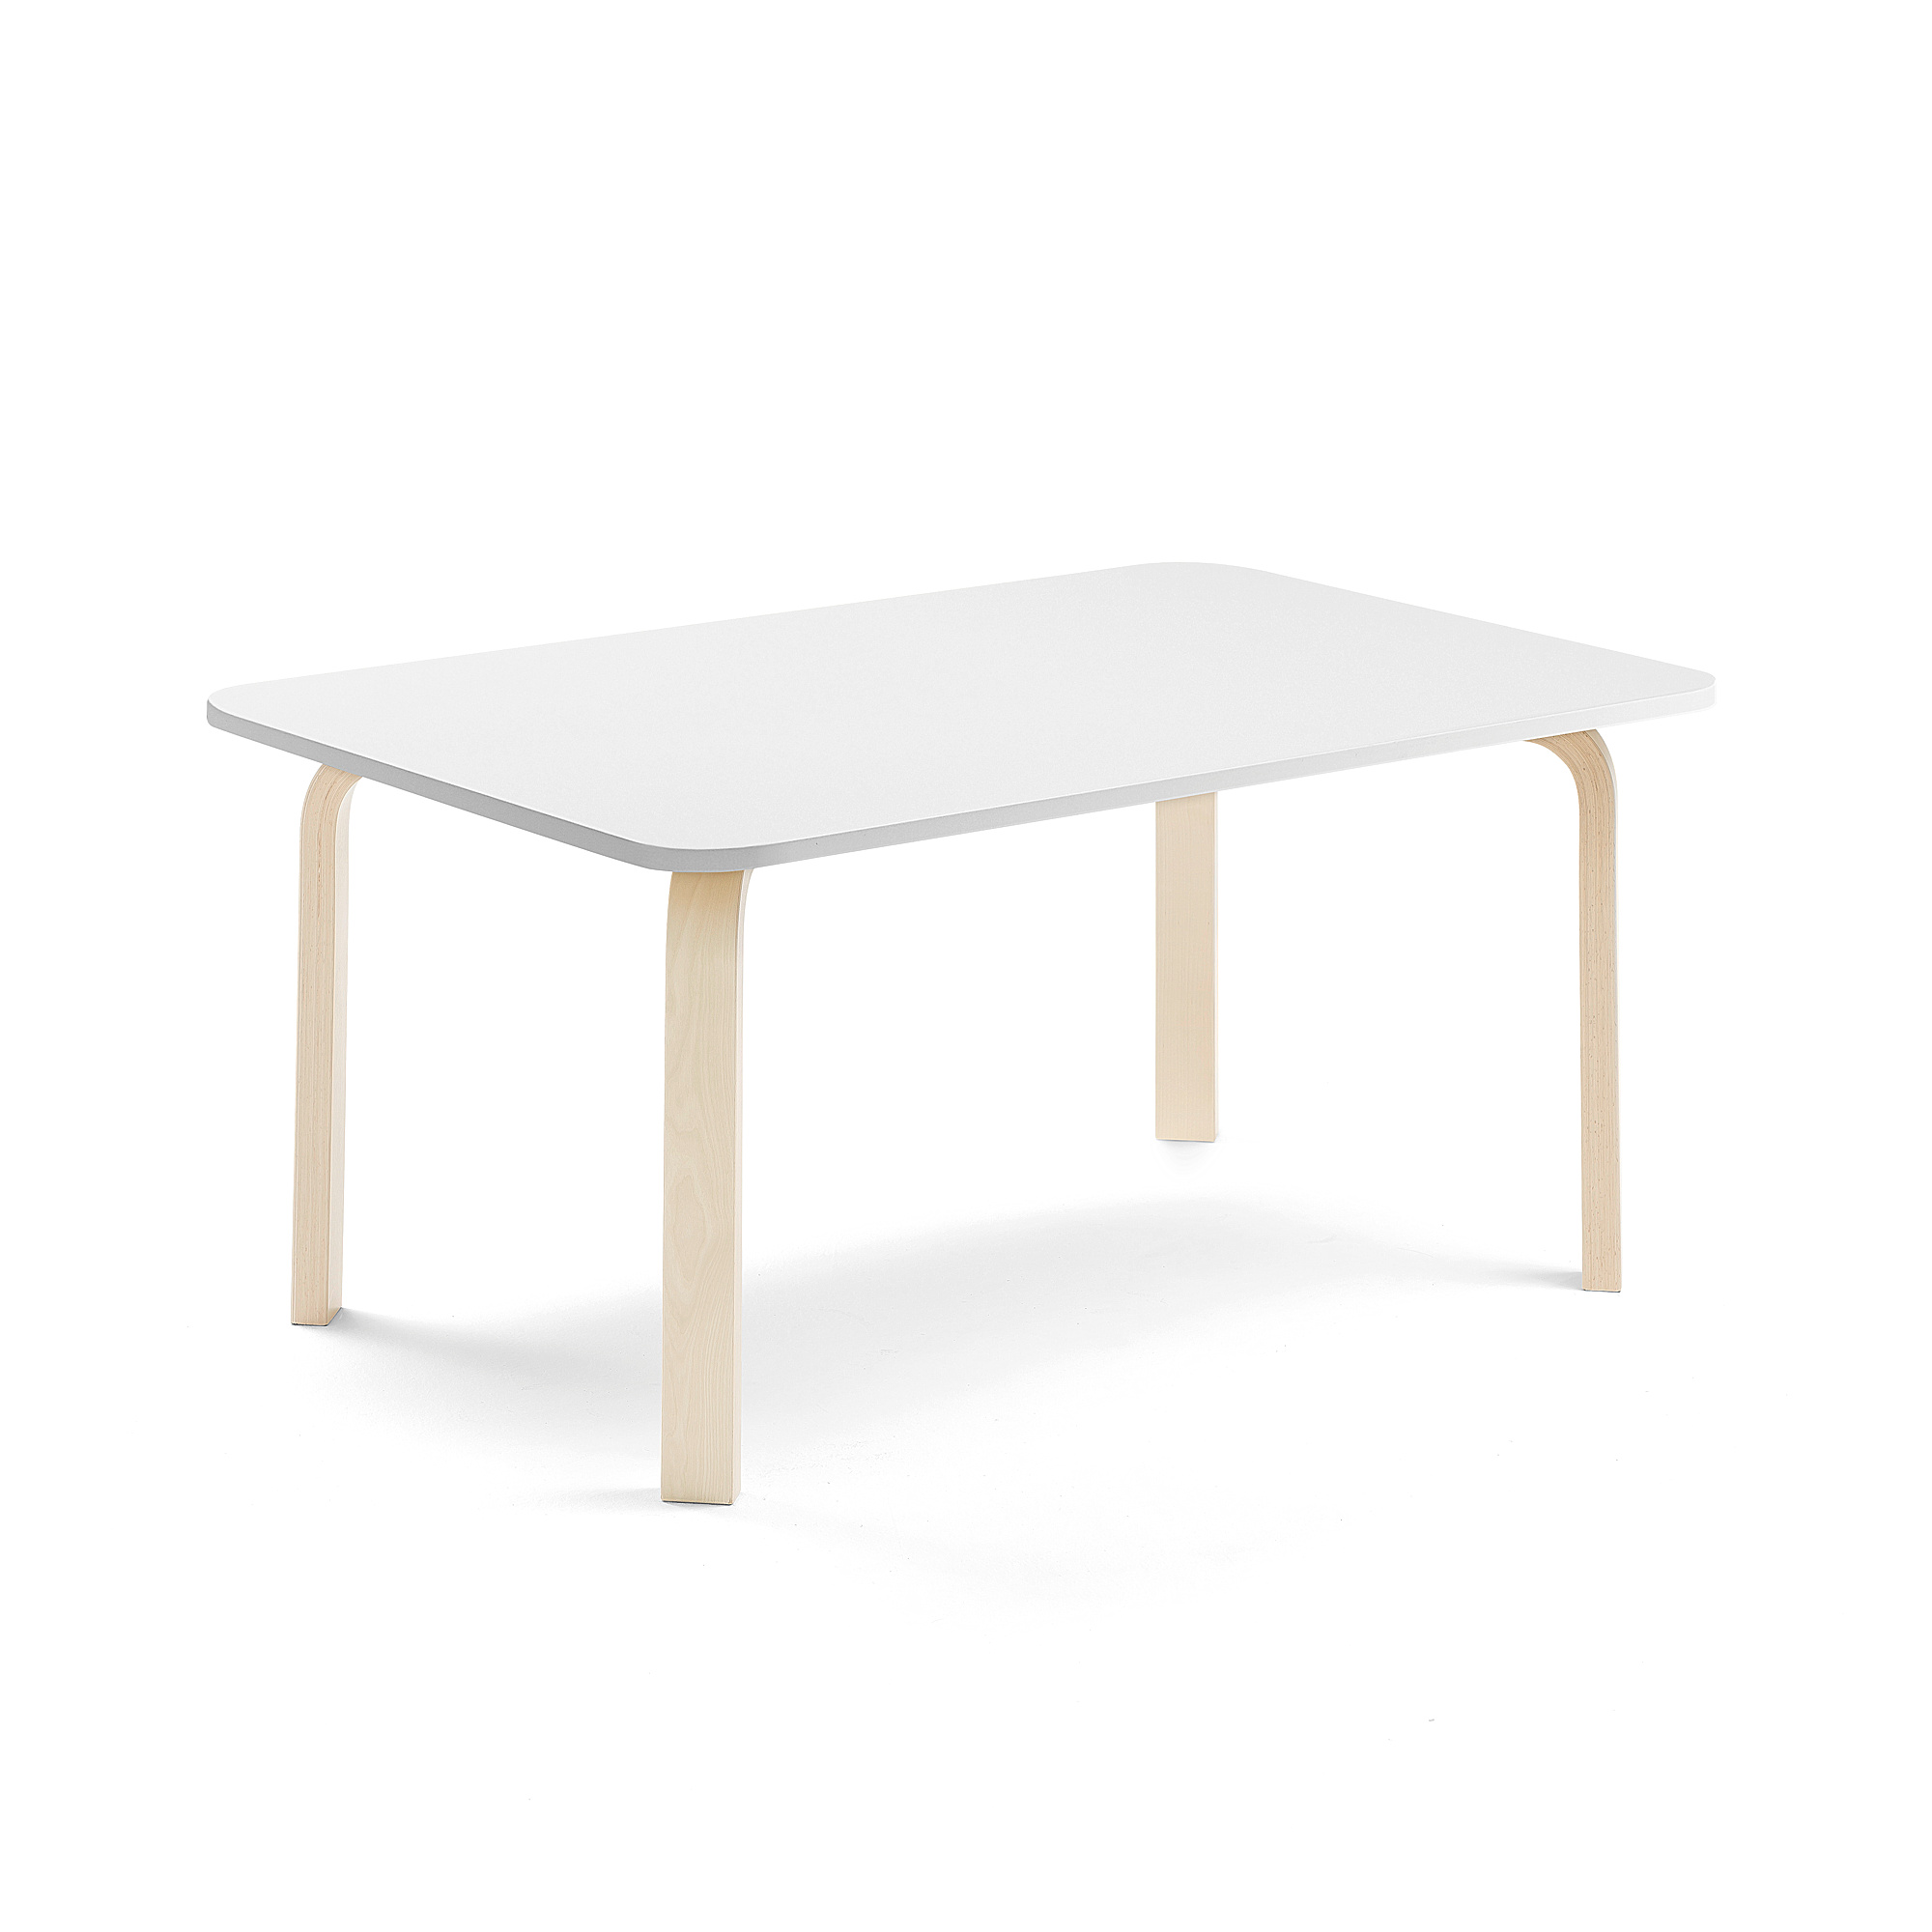 Stůl ELTON, 1200x600x530 mm, bříza, akustická HPL deska, bílá